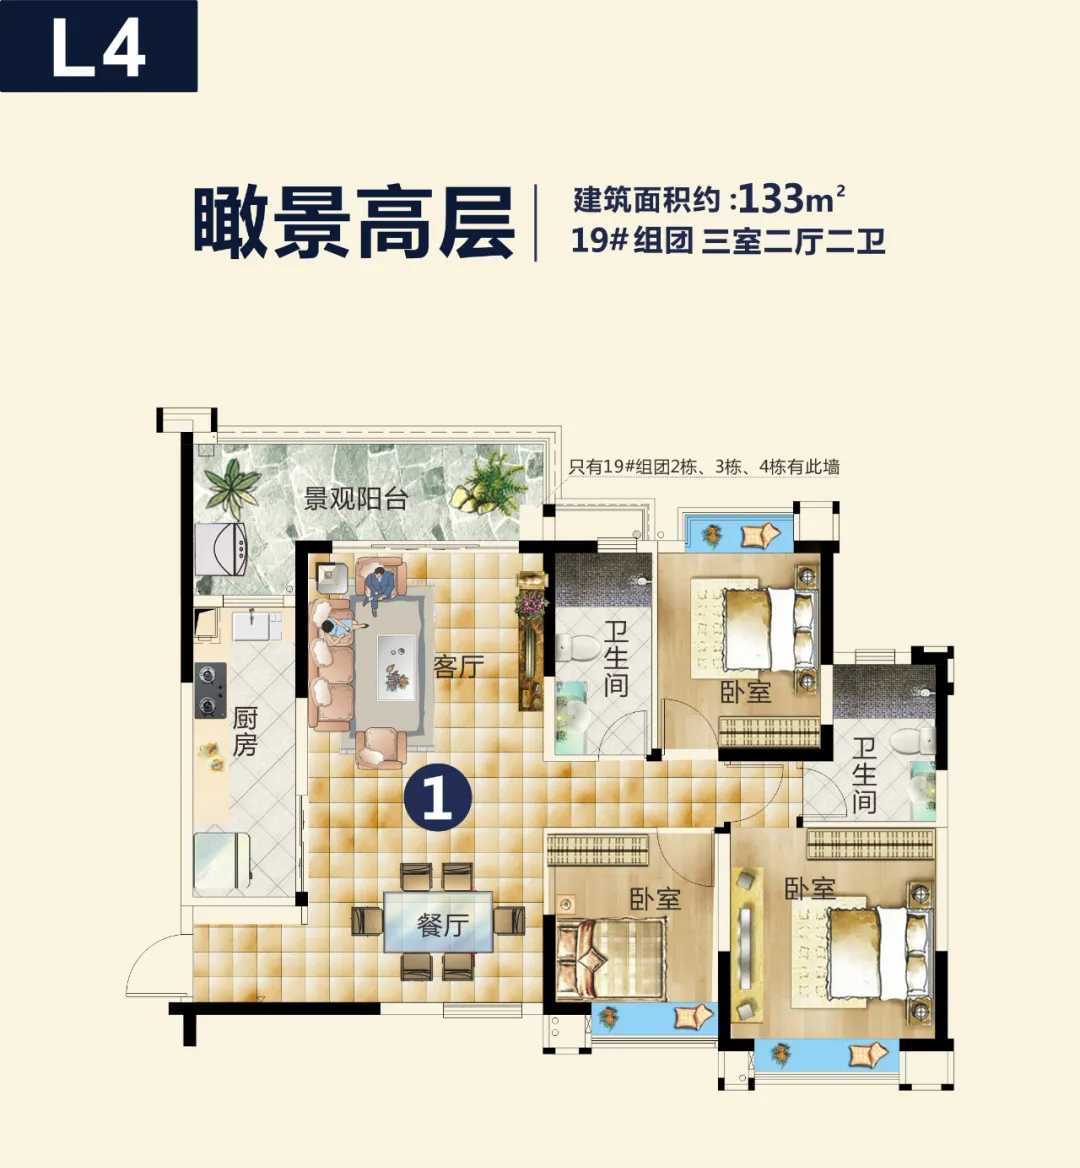 贵阳恒大文化旅游城推出19组团L4 三室二厅乐园装修高层-中国网地产